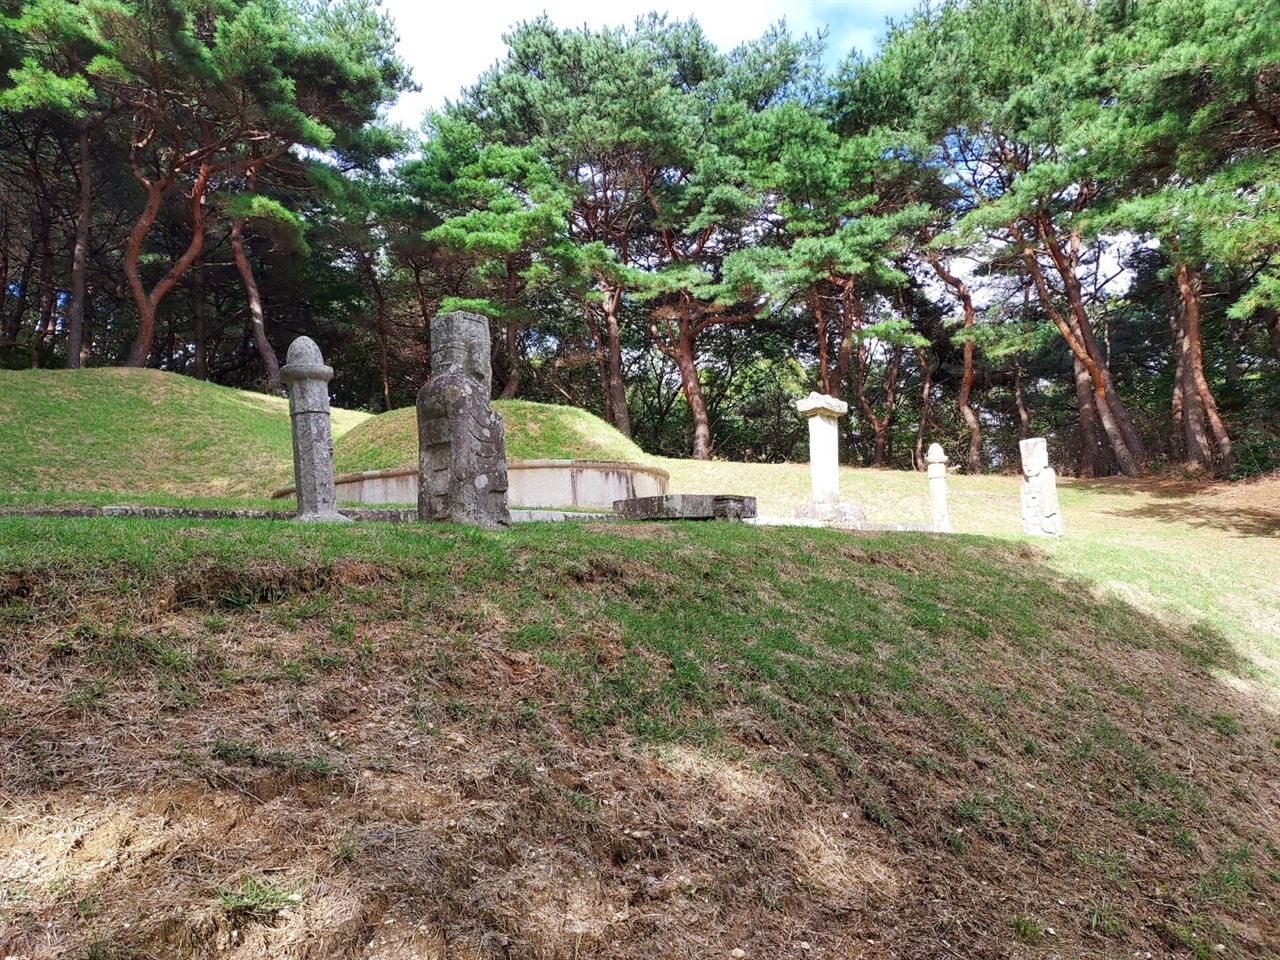 장군 1묘역 278번 묘 옆 대나무 사이로 접어들면 보훈둘레길 노랑길이 나온다. 그곳에 들어가면 바로 사우당 이시담의 묘를 발견할 수 있다. 